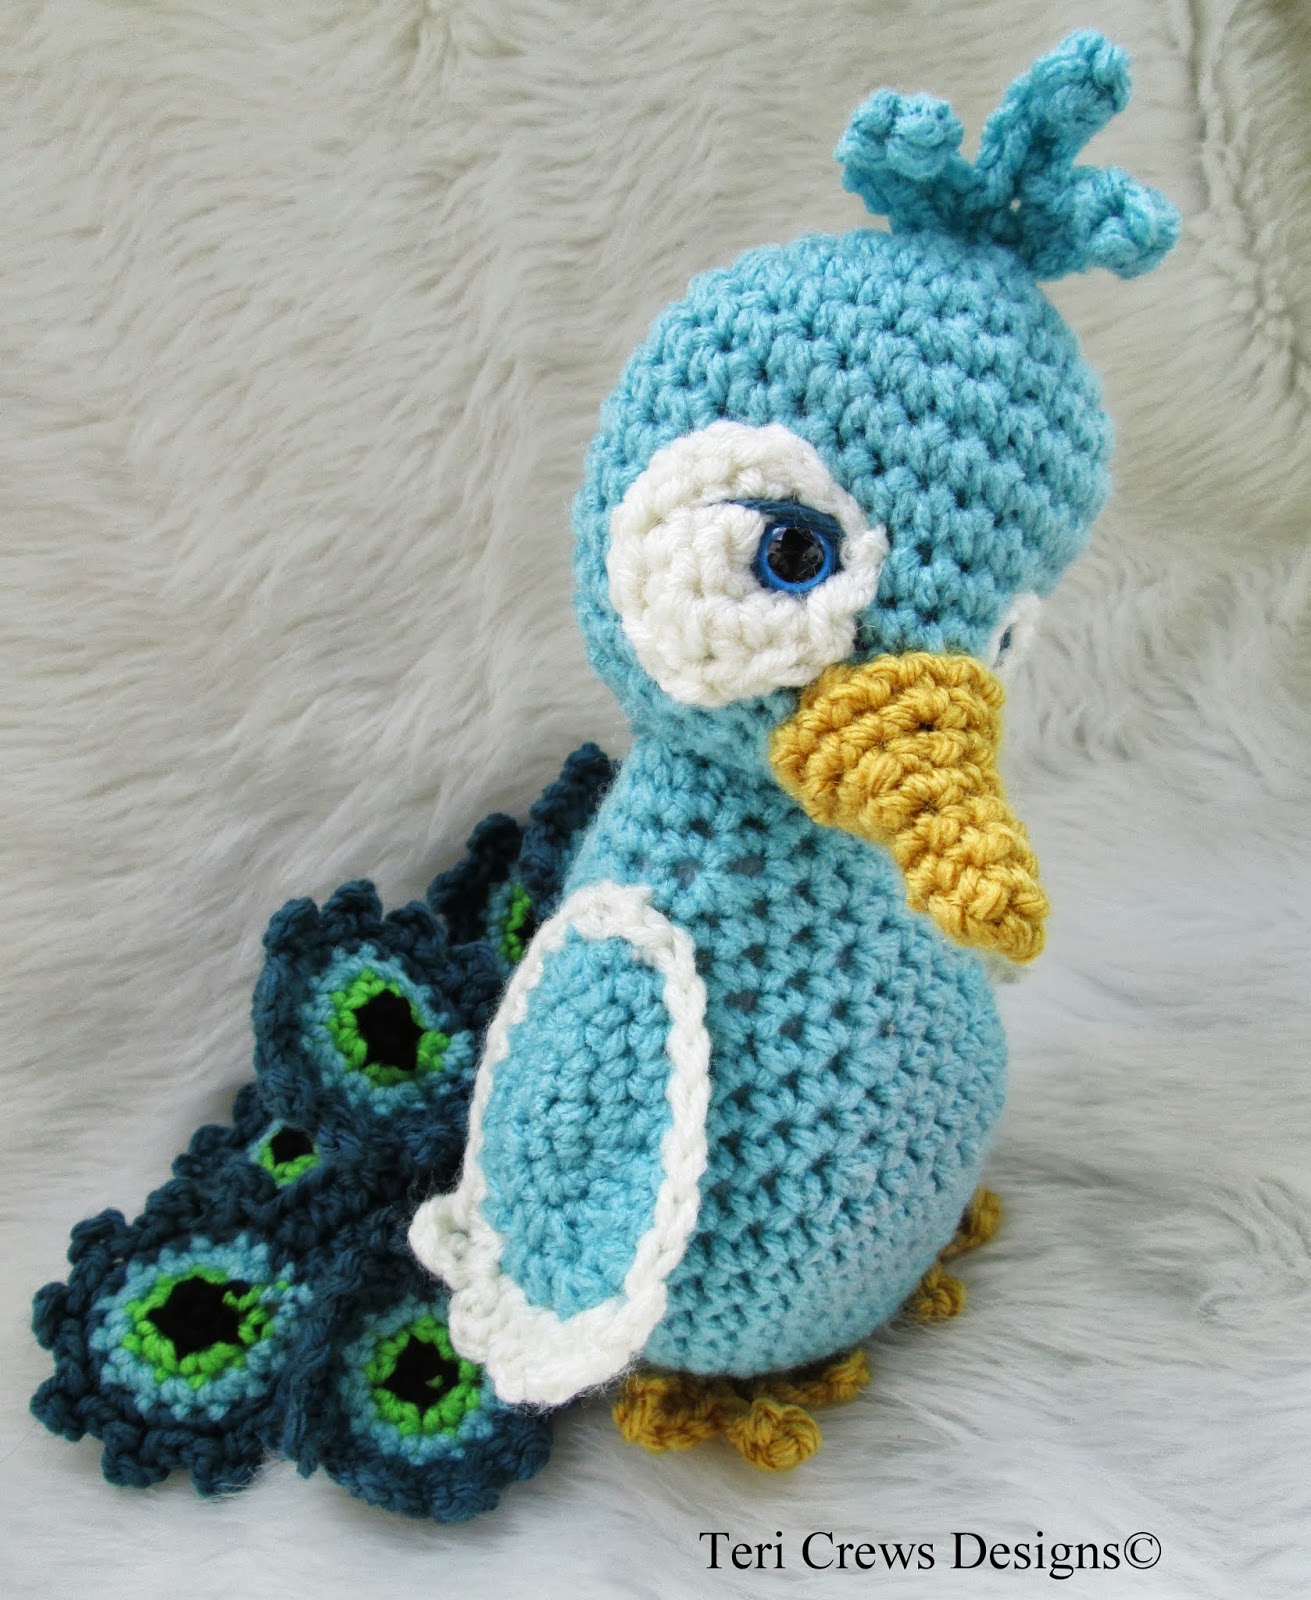 Crochet peacock pattern